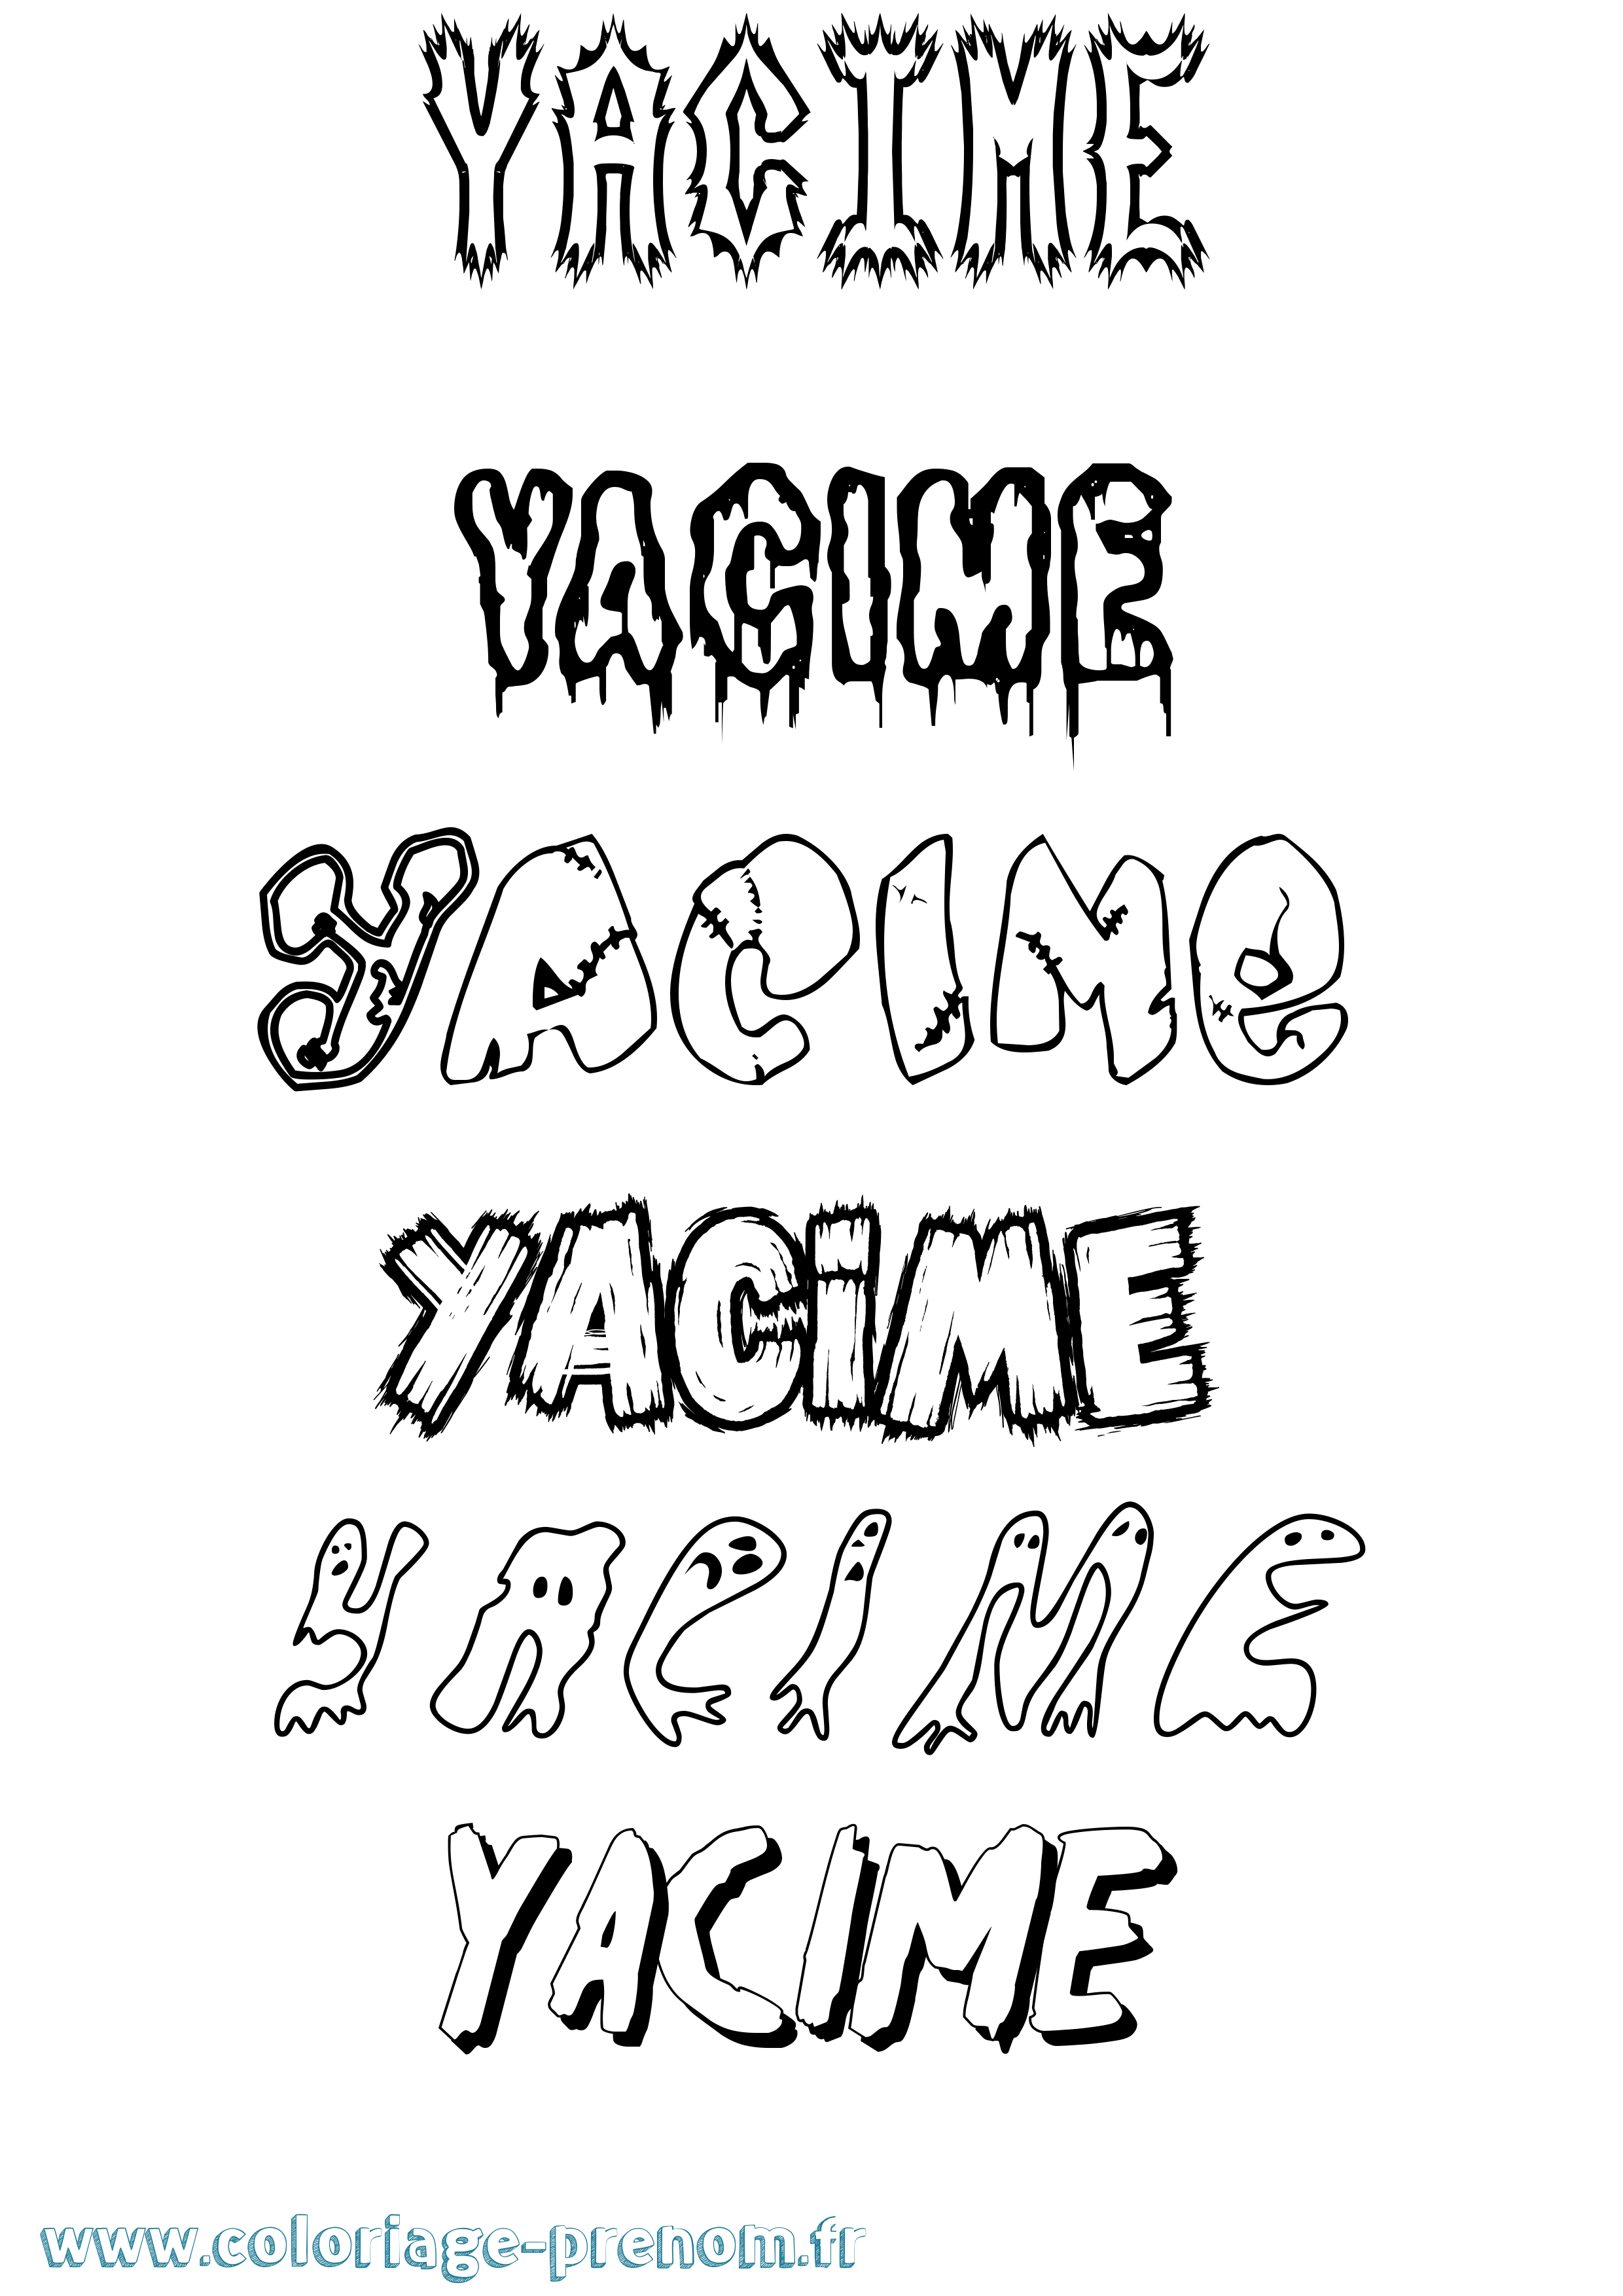 Coloriage prénom Yacime Frisson